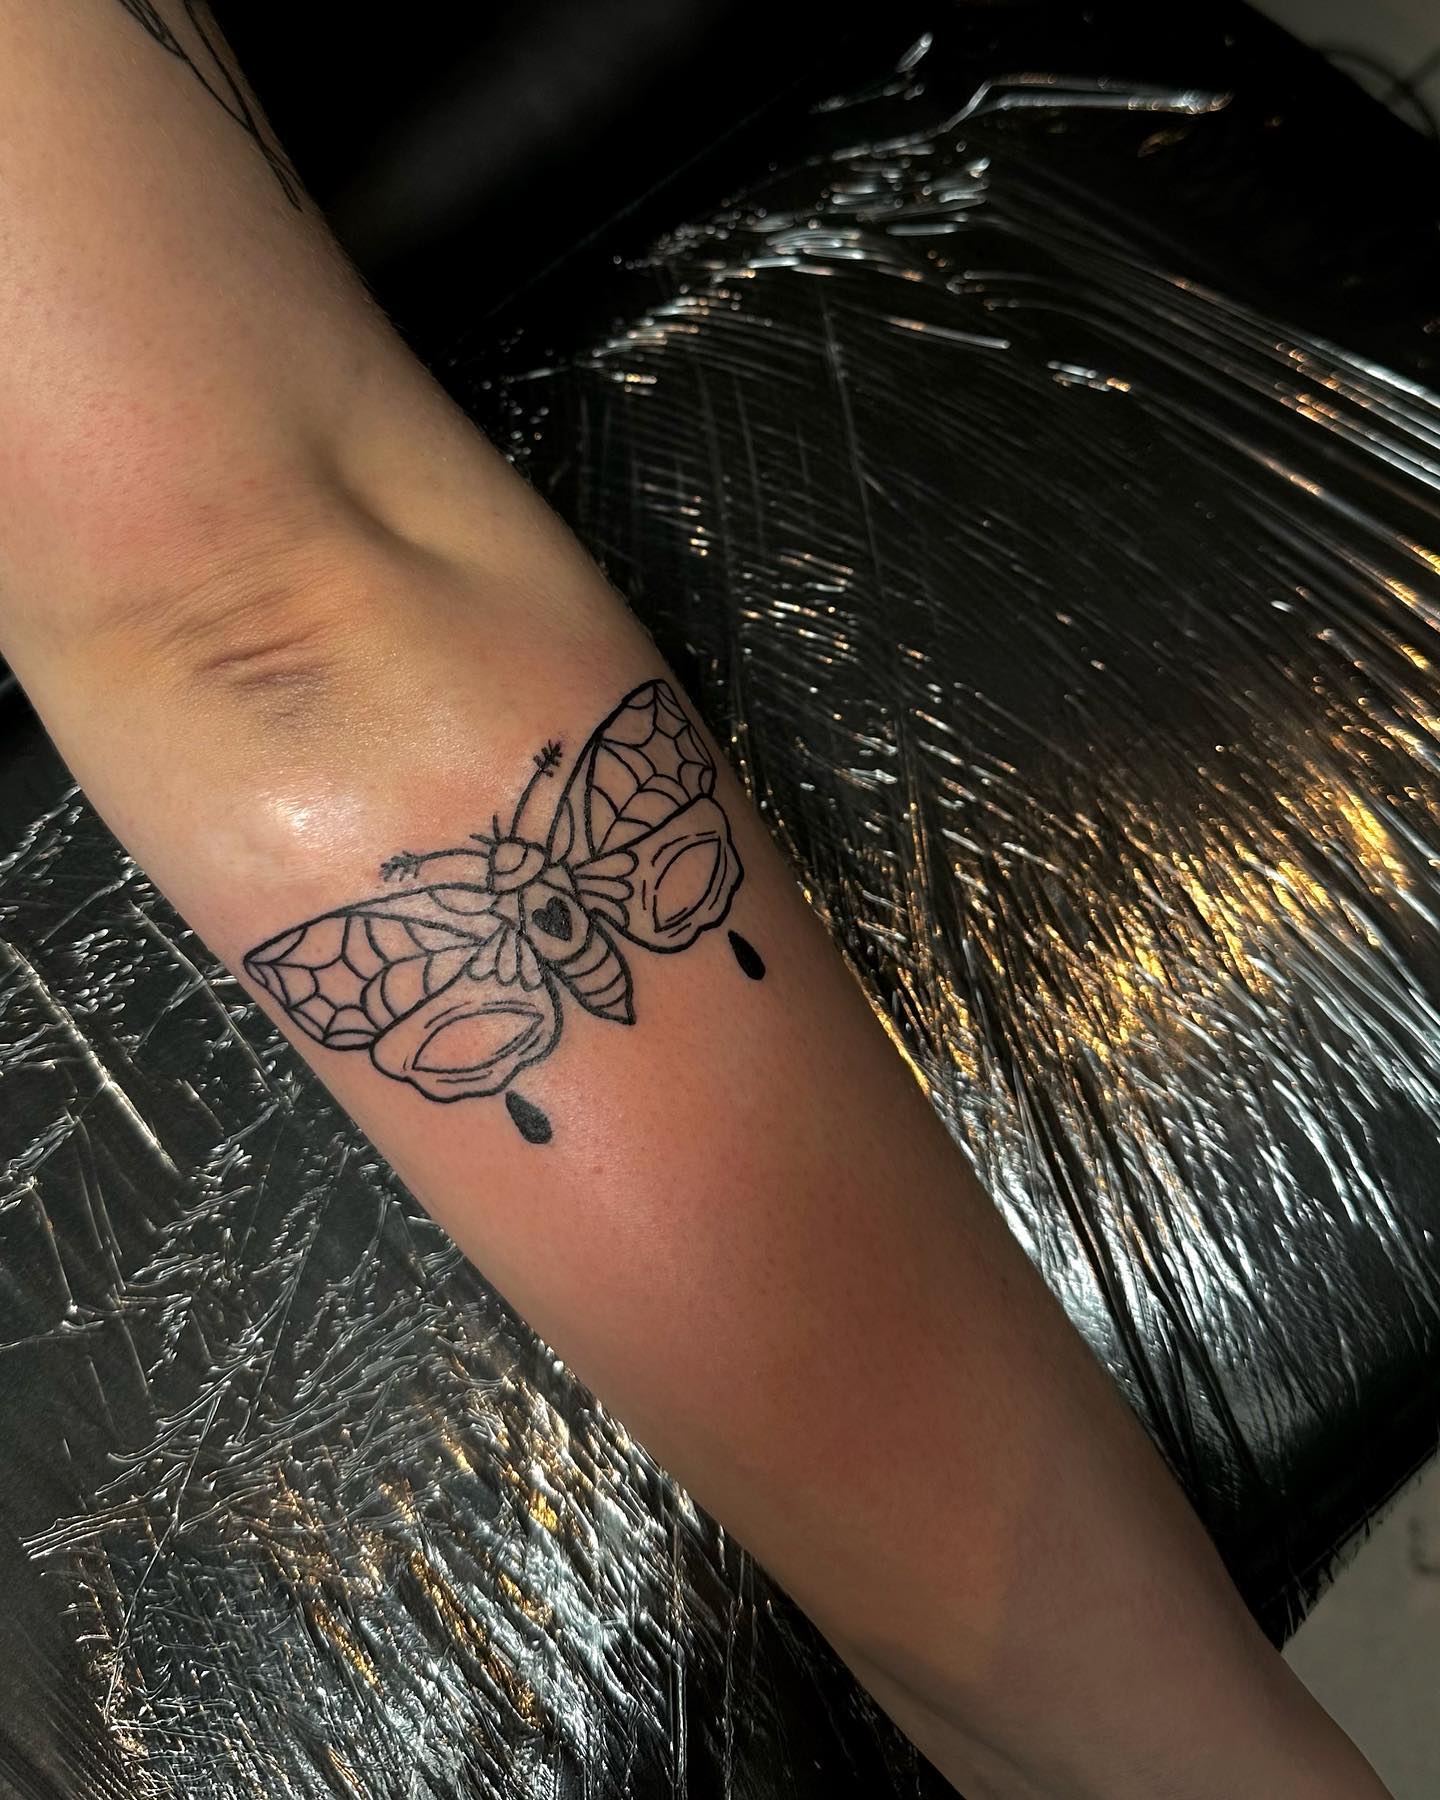 __
.
.
#tattoo #tattooideas #tattooinspiration #tattoocologne #tattooköln #sardi